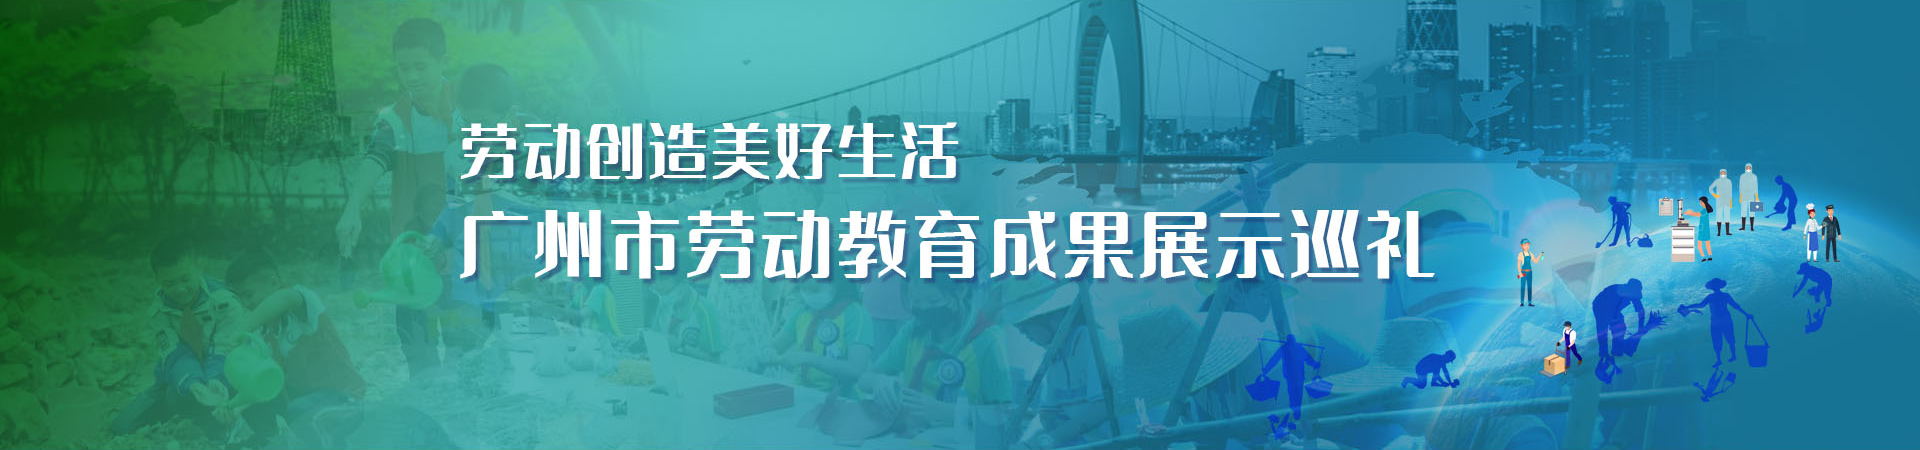 广州市教育系统全力做好新冠肺炎疫情防控工作